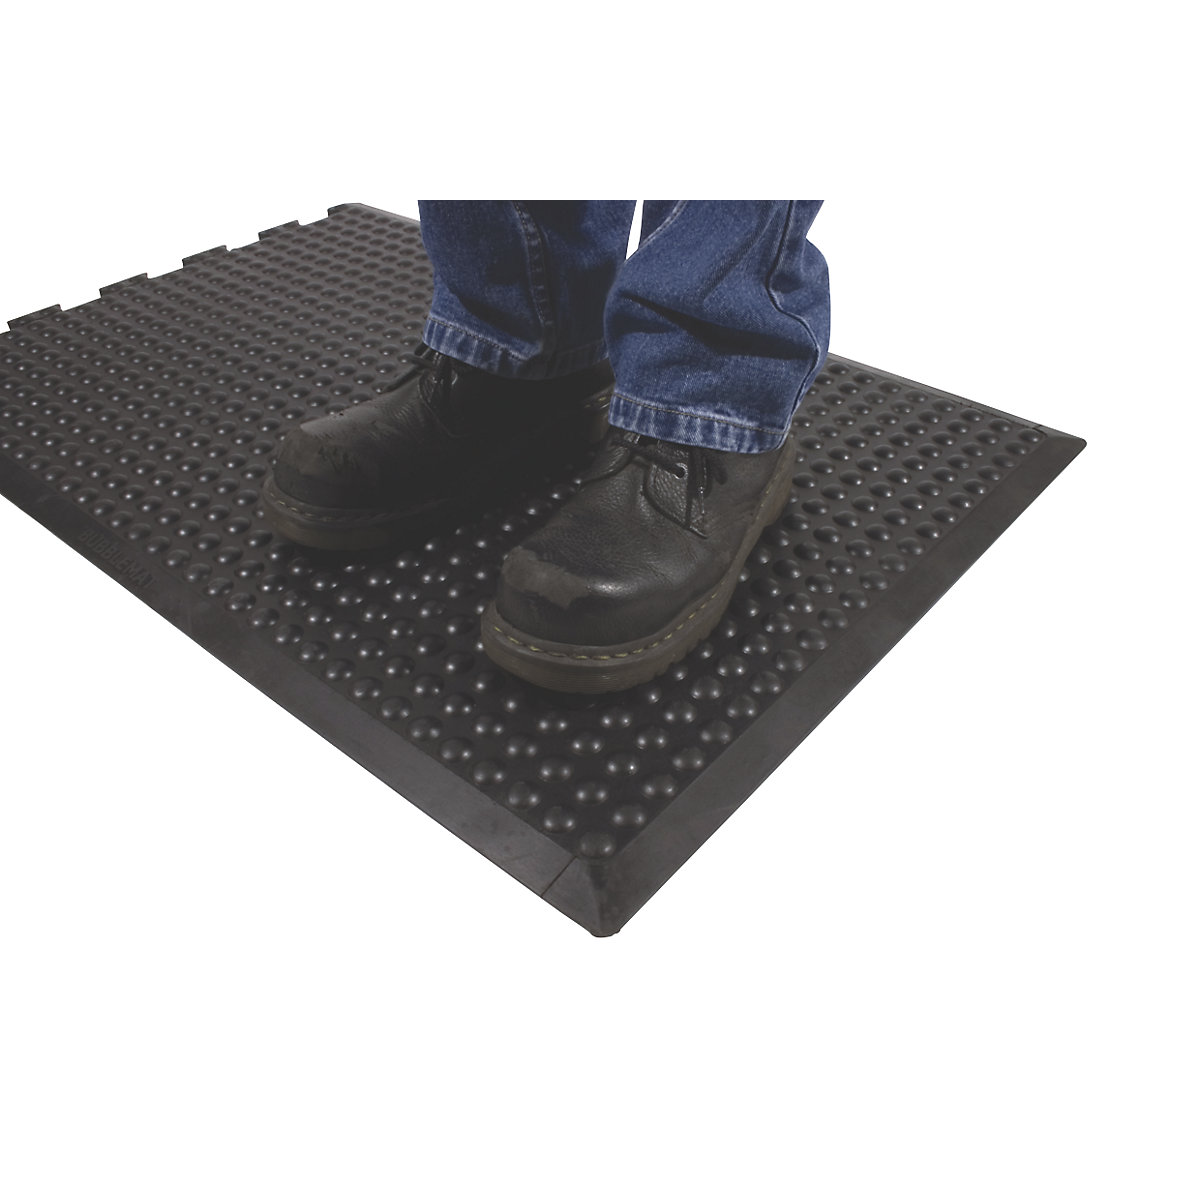 Bubblemat anti-fatigue matting – COBA